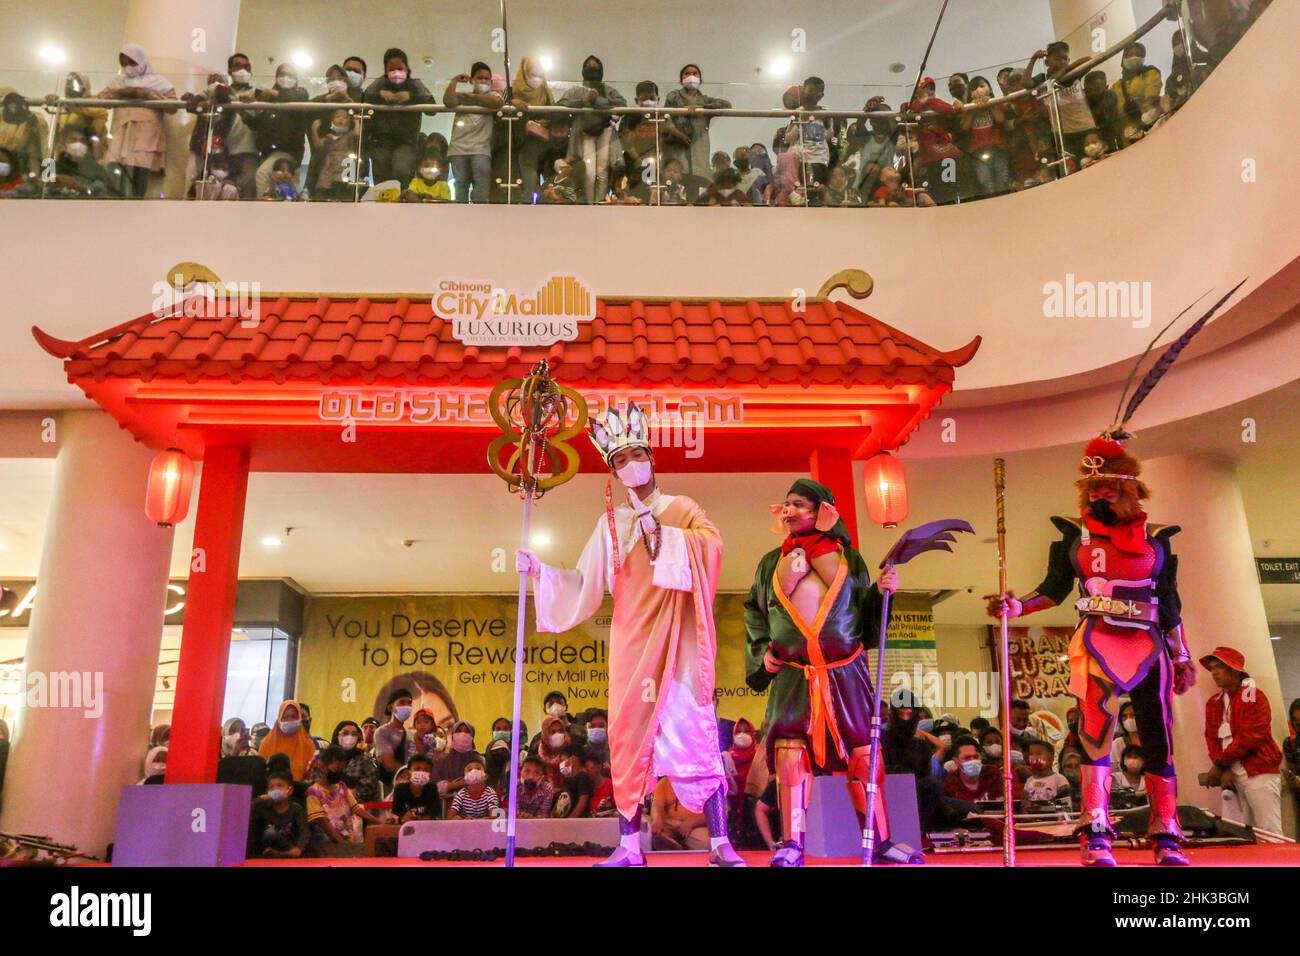 Les représentations des attractions cosplay 'Barongsai' et 'sungo Kong' divertissent les visiteurs dans un centre commercial en Indonésie, pour célébrer le nouvel an chinois Banque D'Images